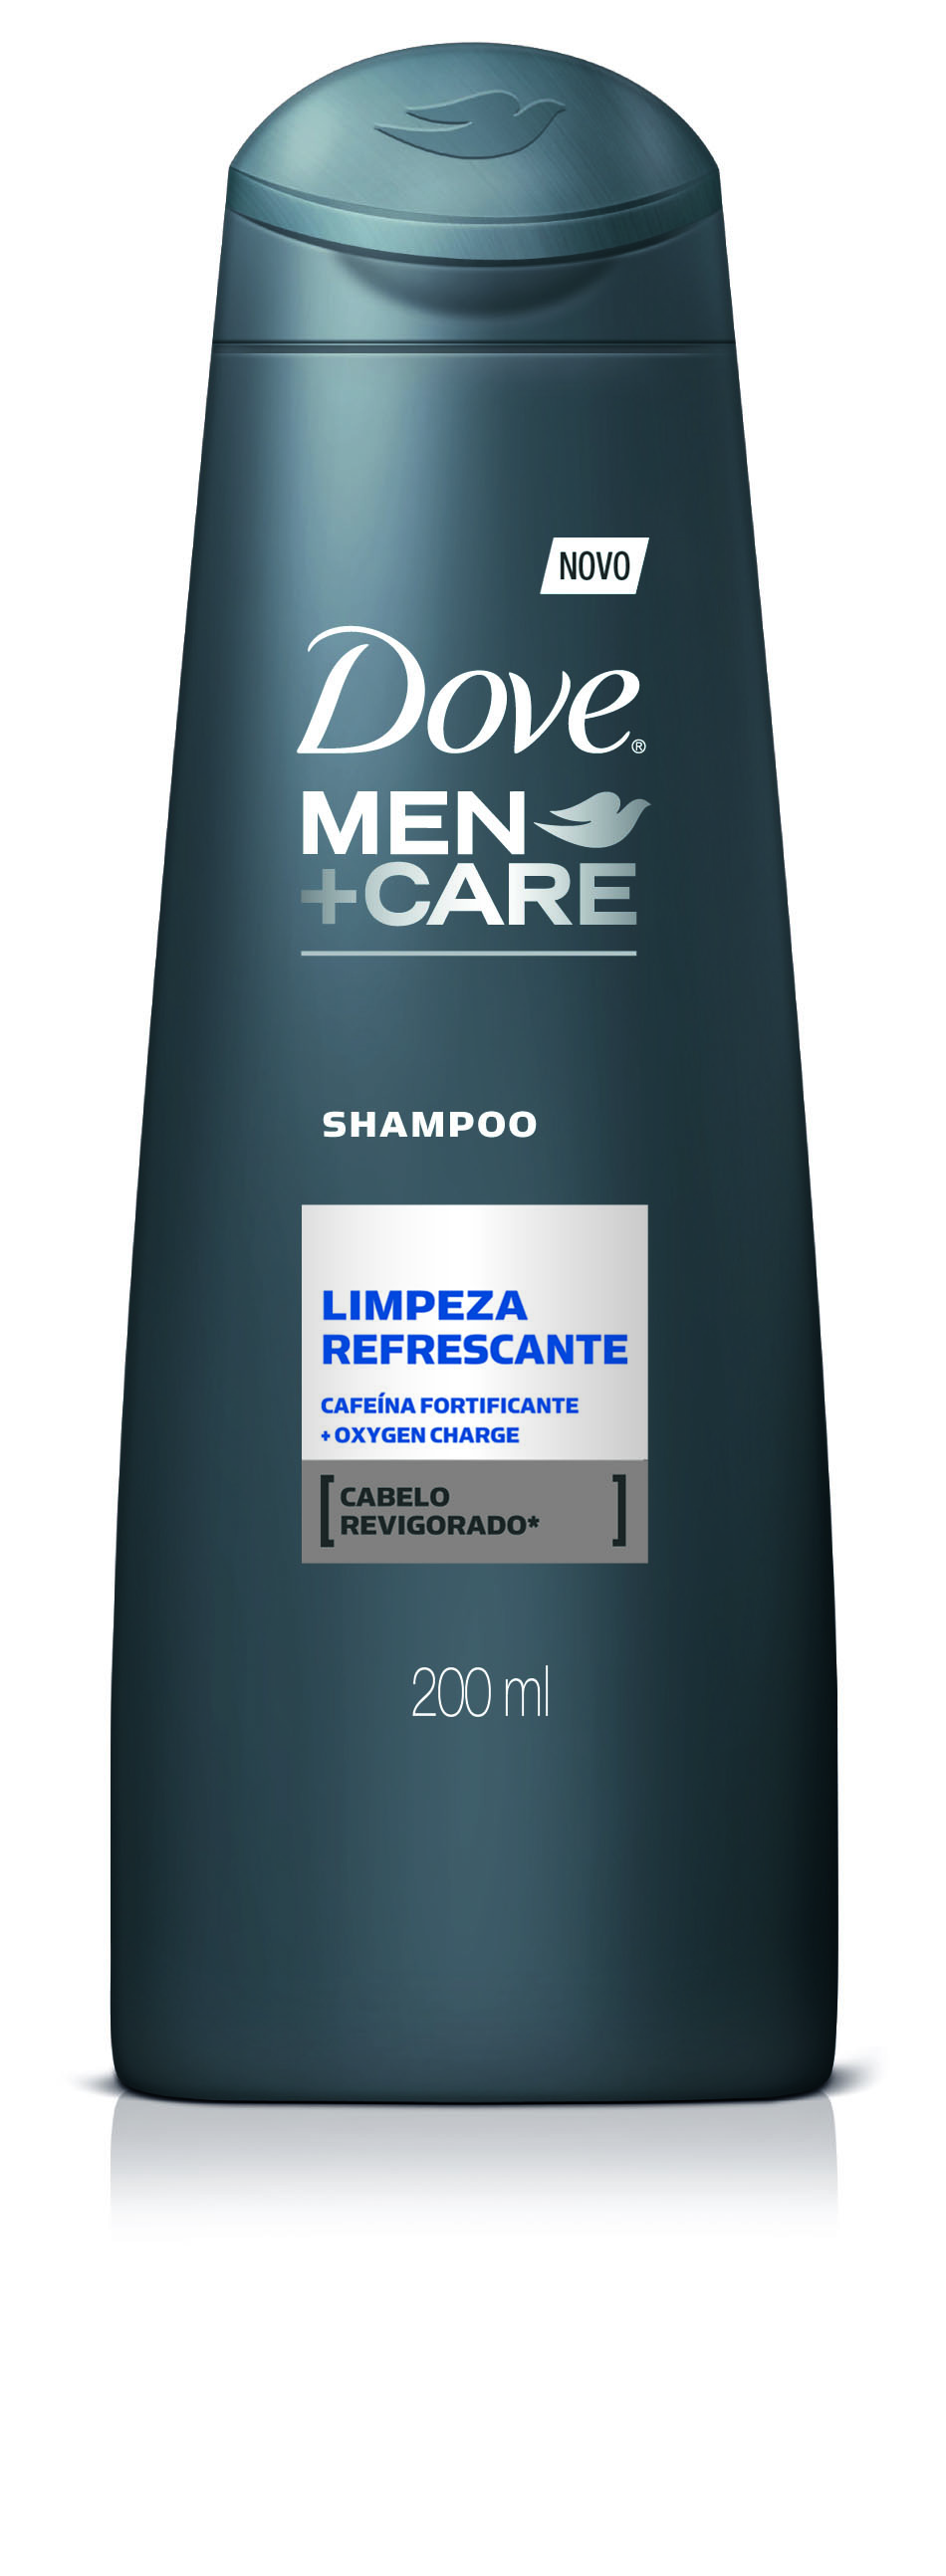 7891150021686 - SHAMPOO DOVE MEN+CARE LIMPEZA REFRESCANTE FRASCO 200ML